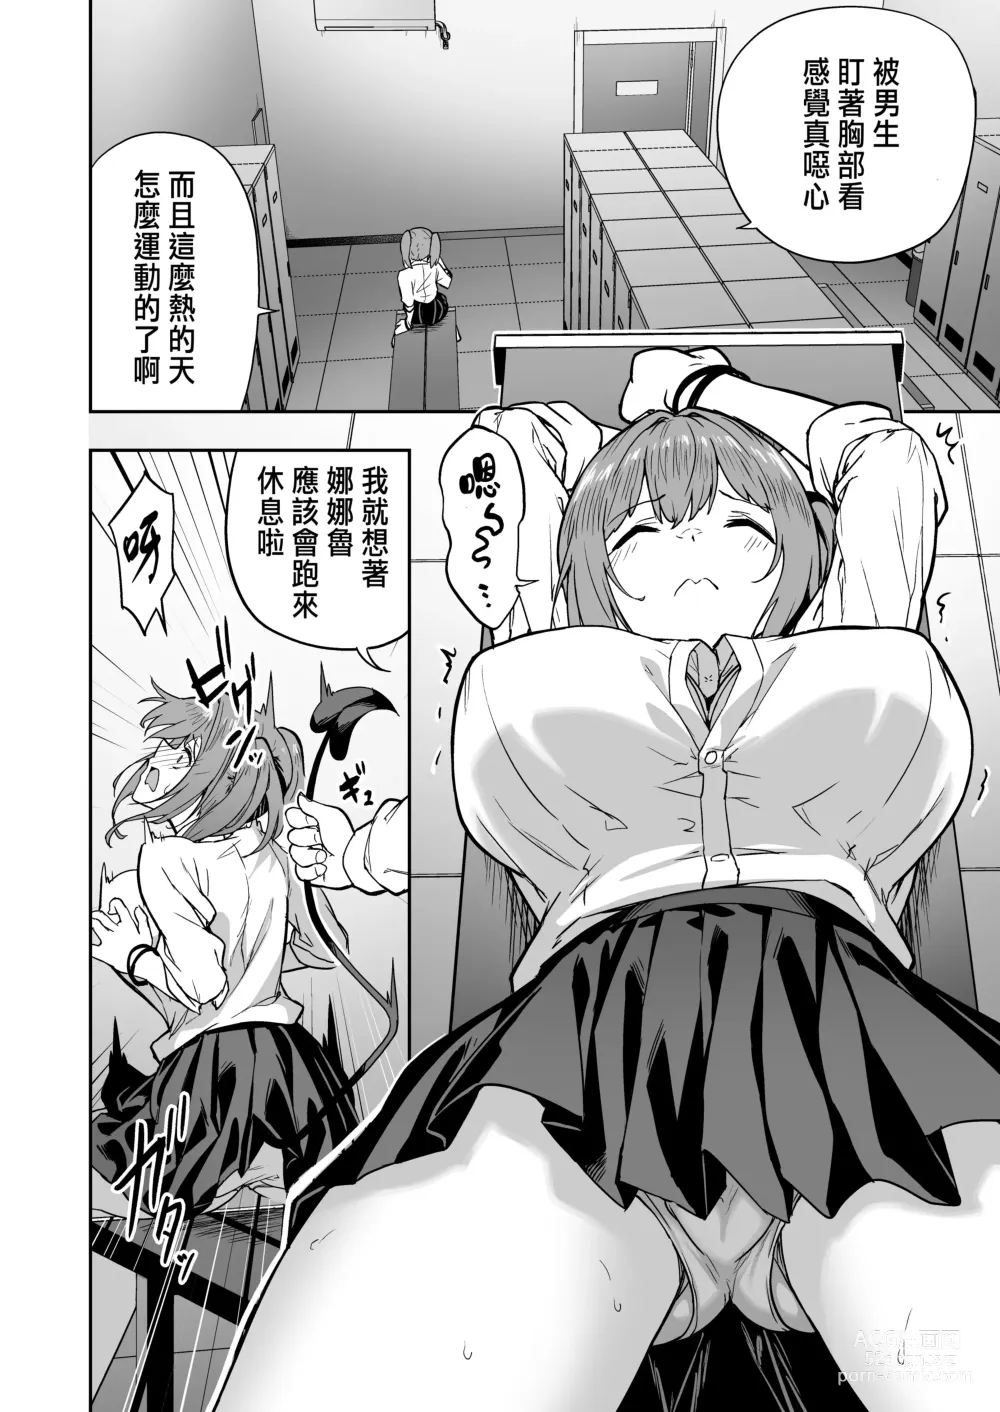 Page 5 of manga 把囂張狂妄的辣妹變成魅魔來懲罰